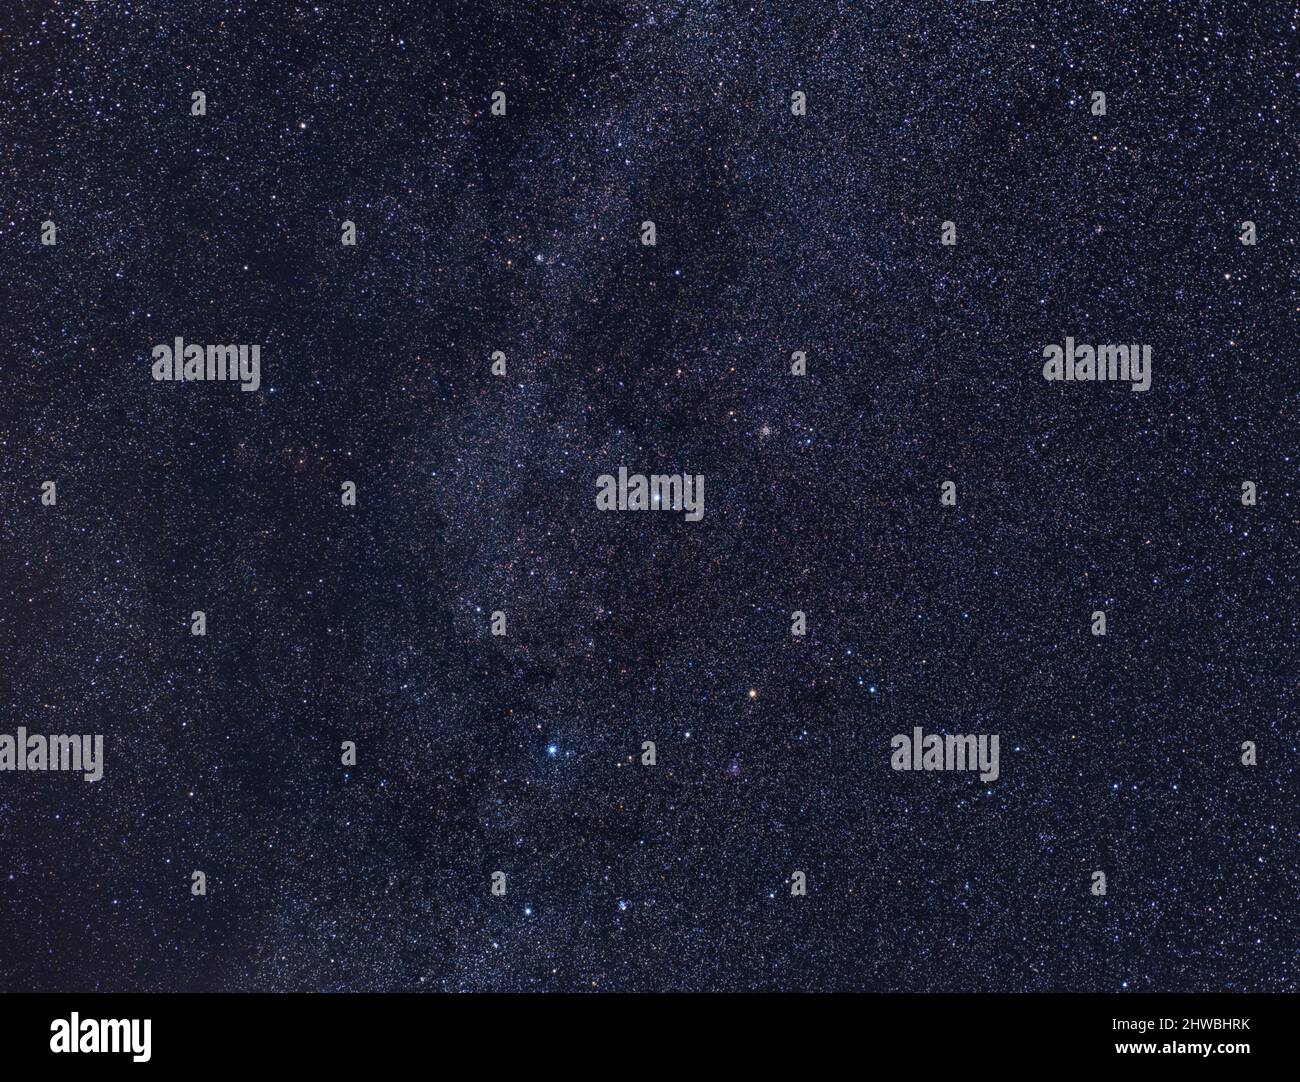 La voie lactée avec l'étoile Caph au centre et les constellations de Cassiopée, Andromeda et Cepheus avec un objectif de 60 mm Banque D'Images